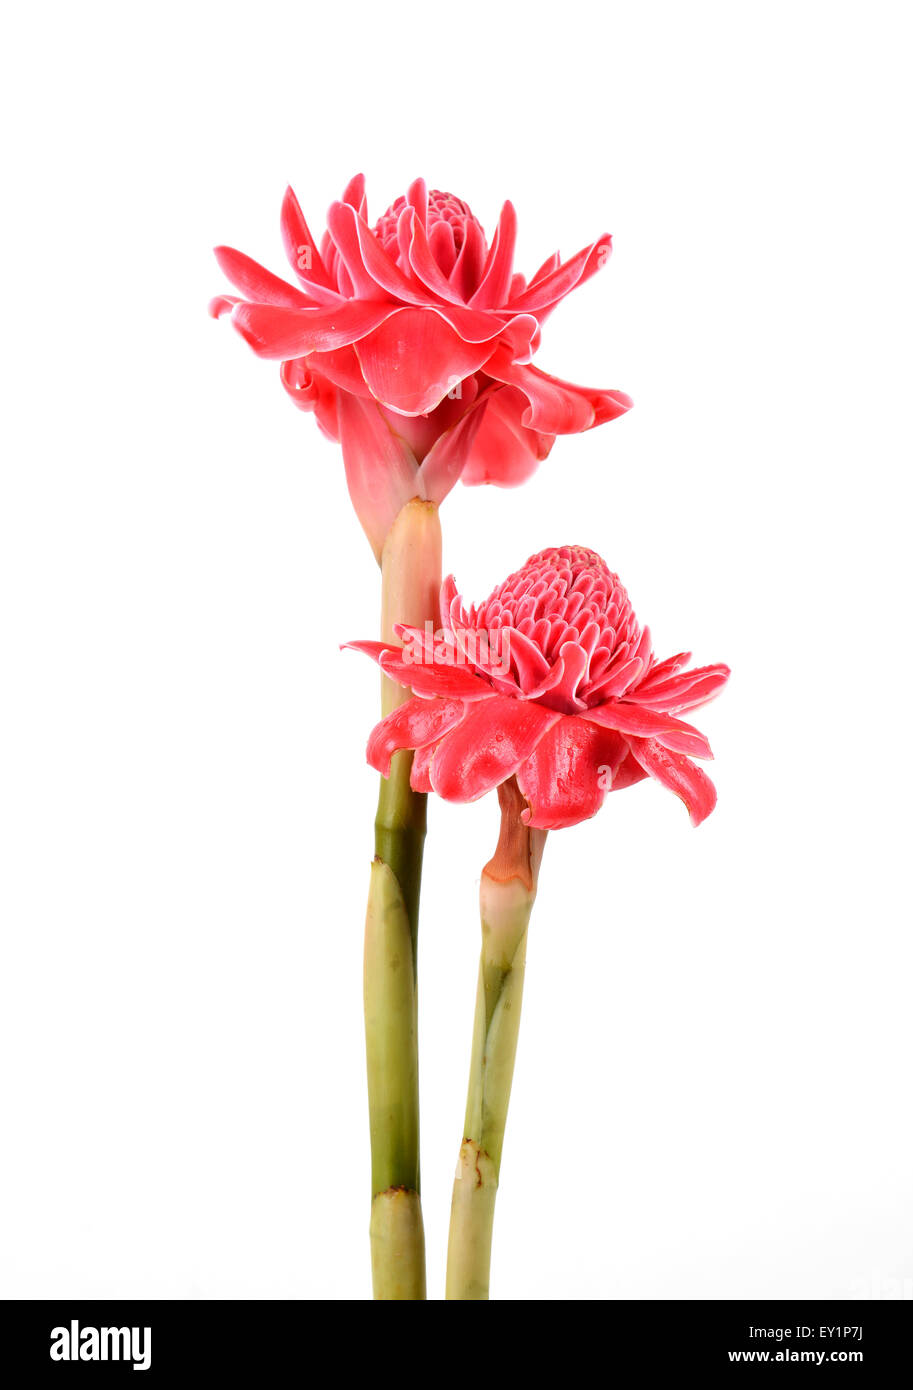 etlingera  elatior flower isolated on white background Stock Photo